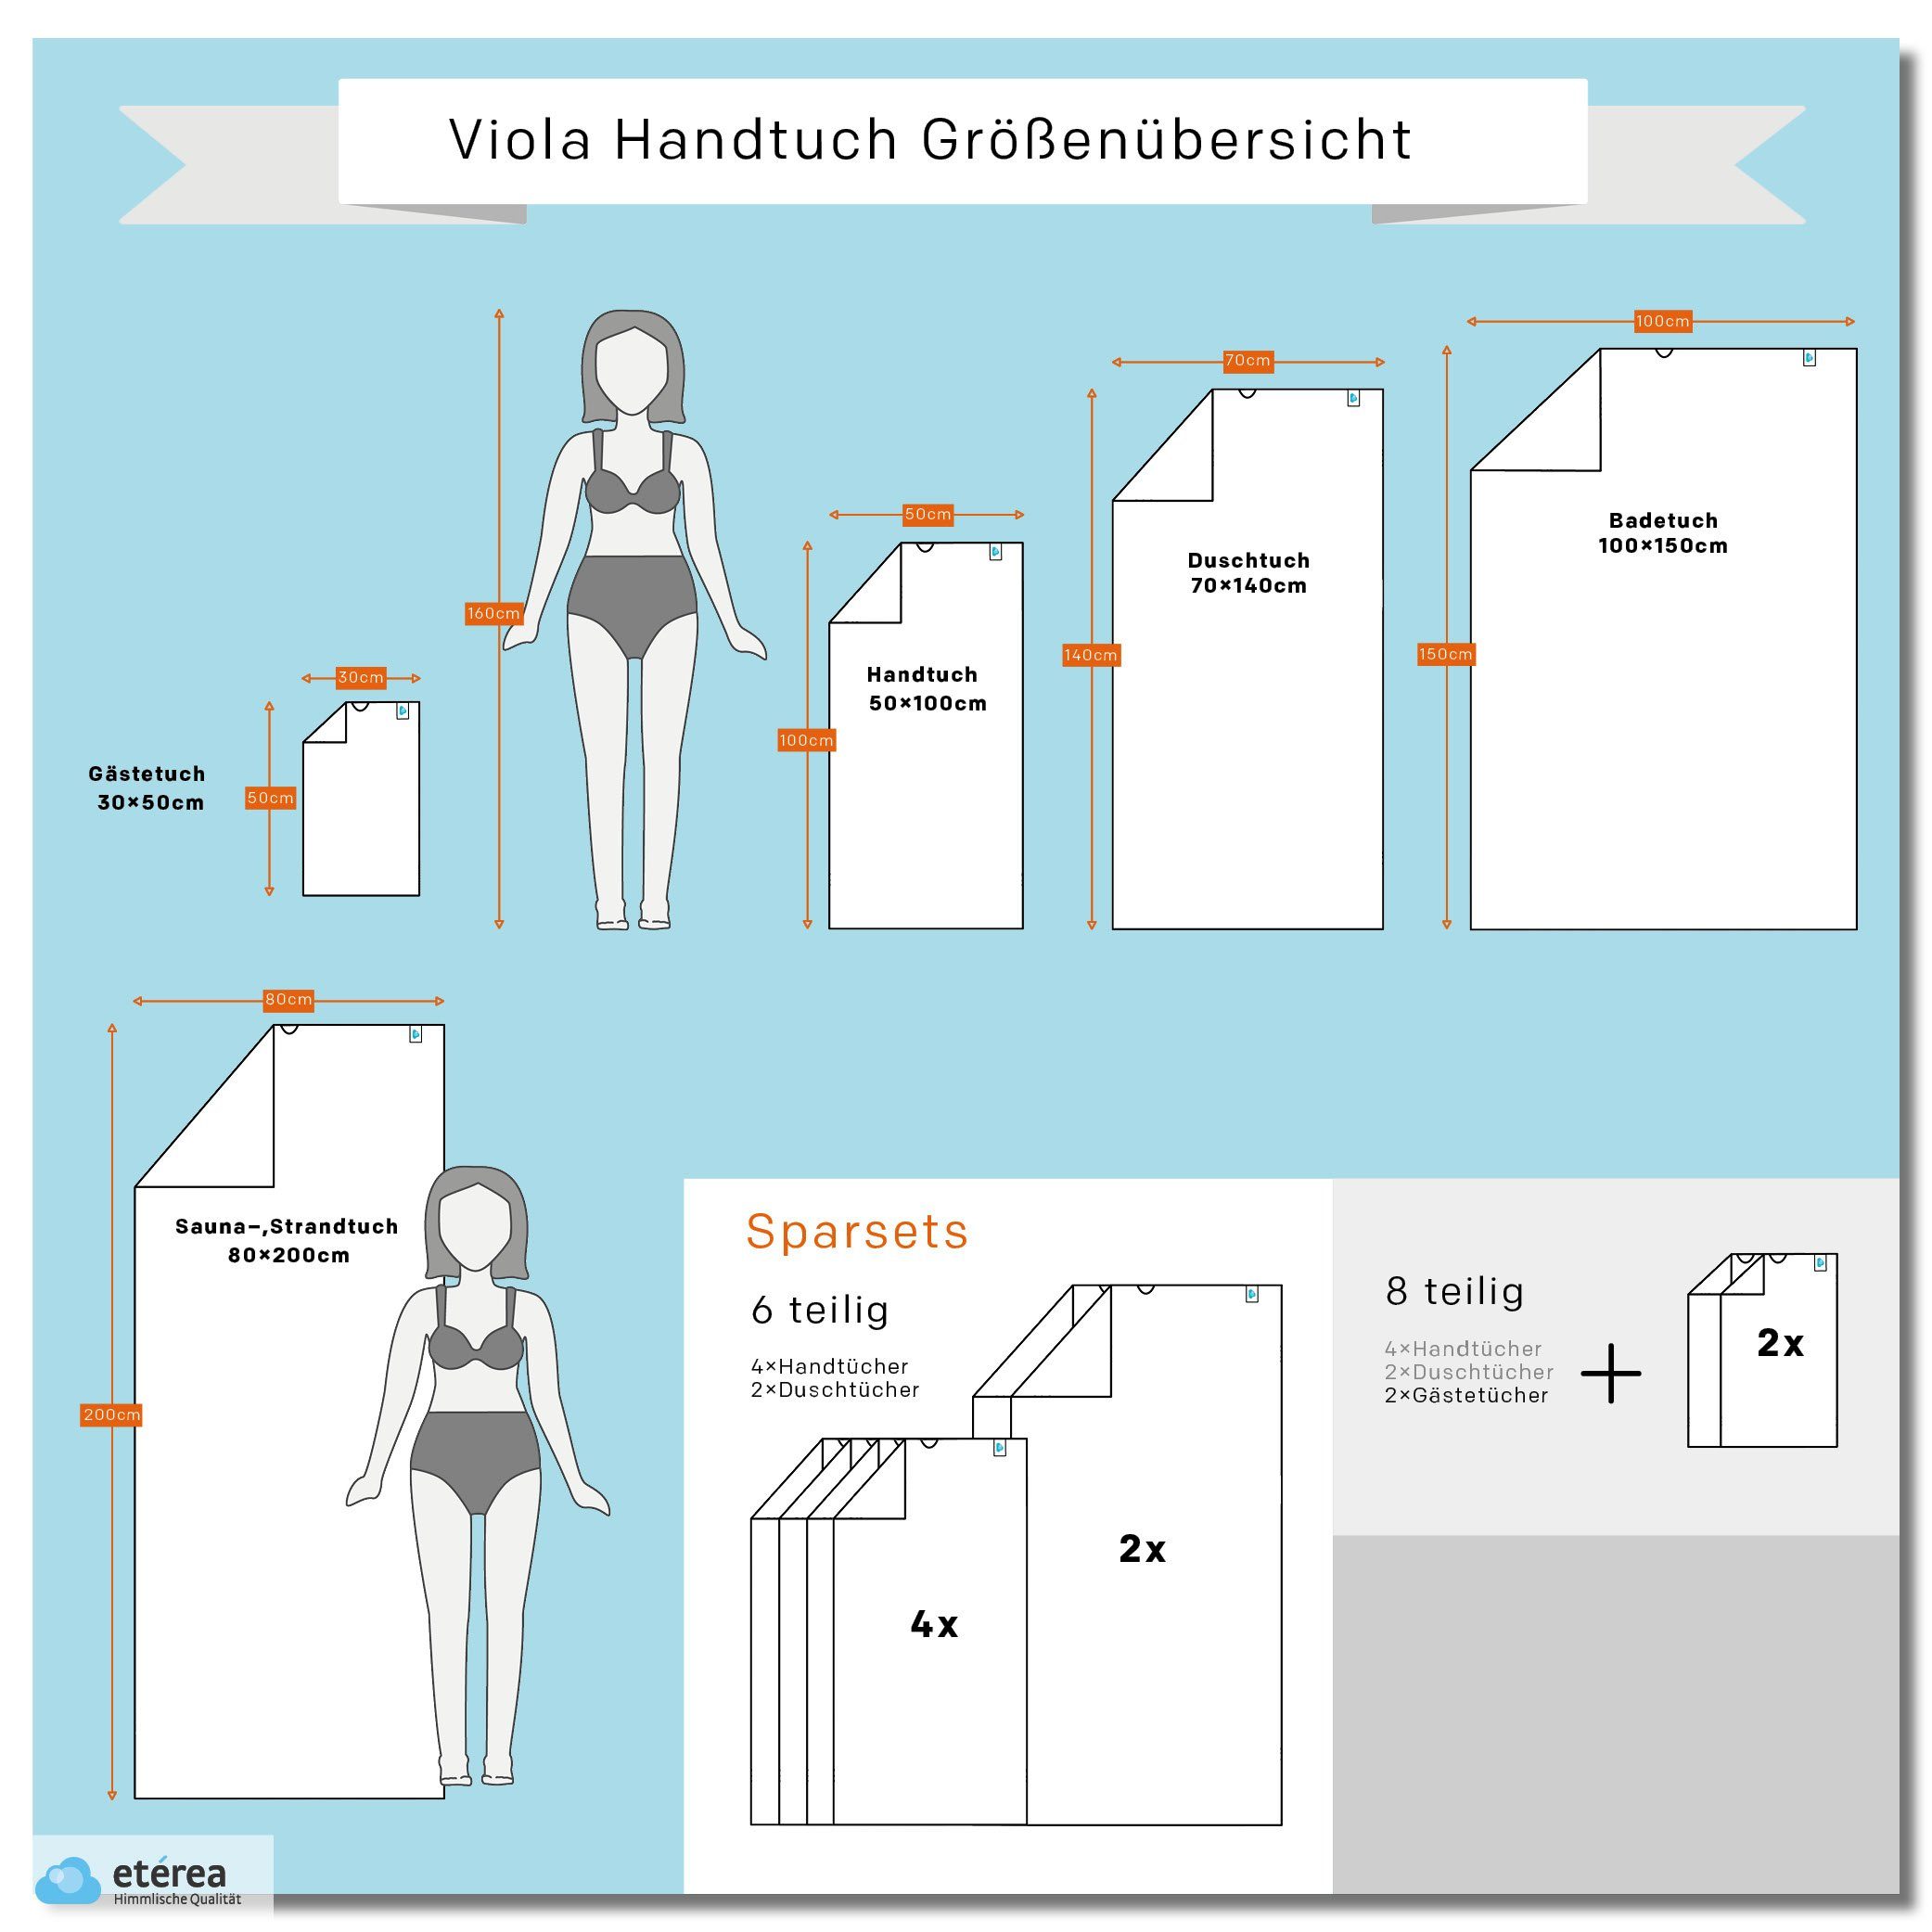 Viola Himmlische Mauve-Anthrazit Baumwolle Qualität ohne Handtücher Borte, (6-St) etérea etérea Serie Handtuch